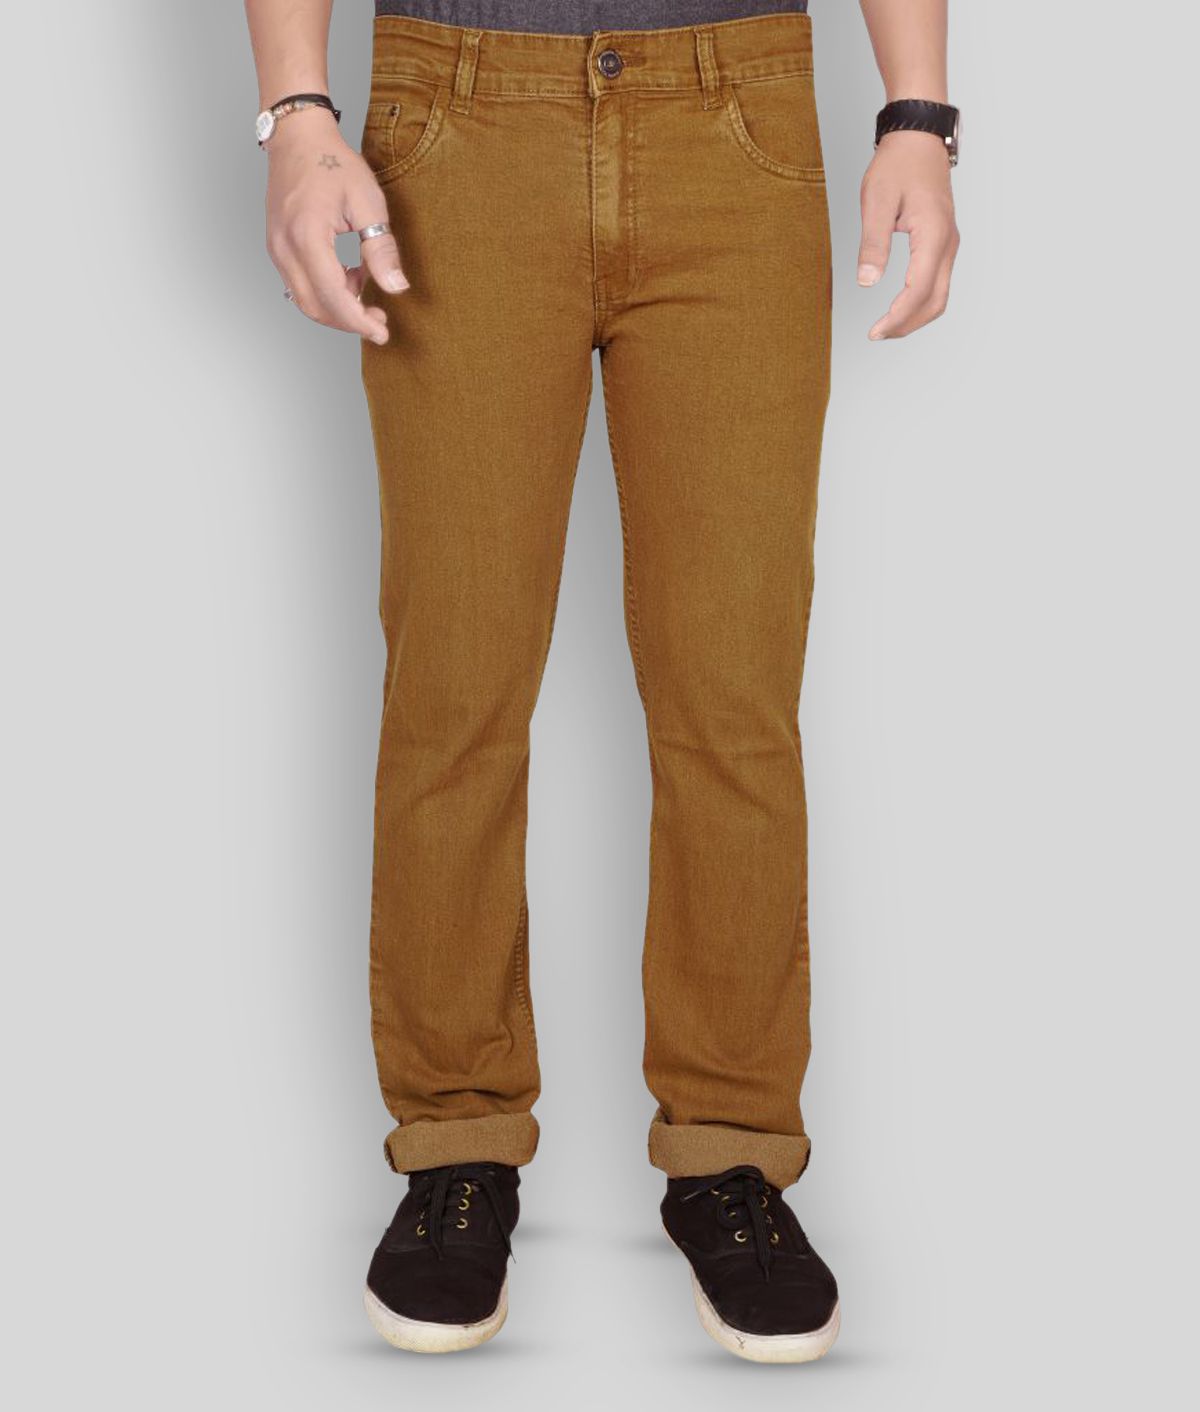 JB JUST BLACK - Brown Cotton Blend Regular Fit Men's Jeans ( Pack of 1 )